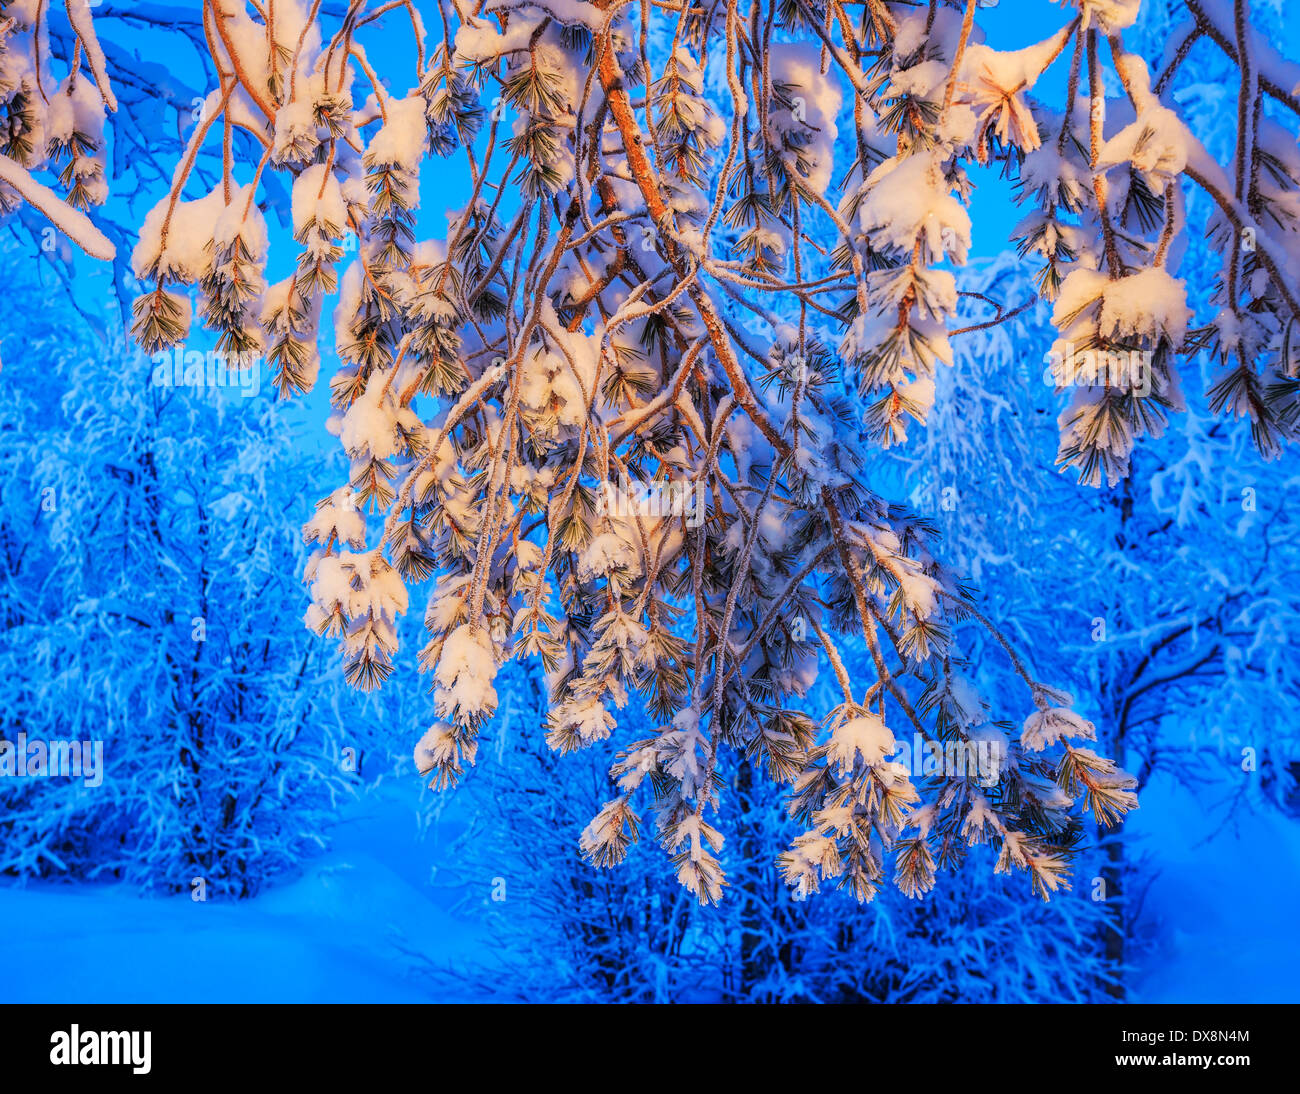 Arbres couverts de neige à des températures extrêmement froides, Laponie, Suède Banque D'Images